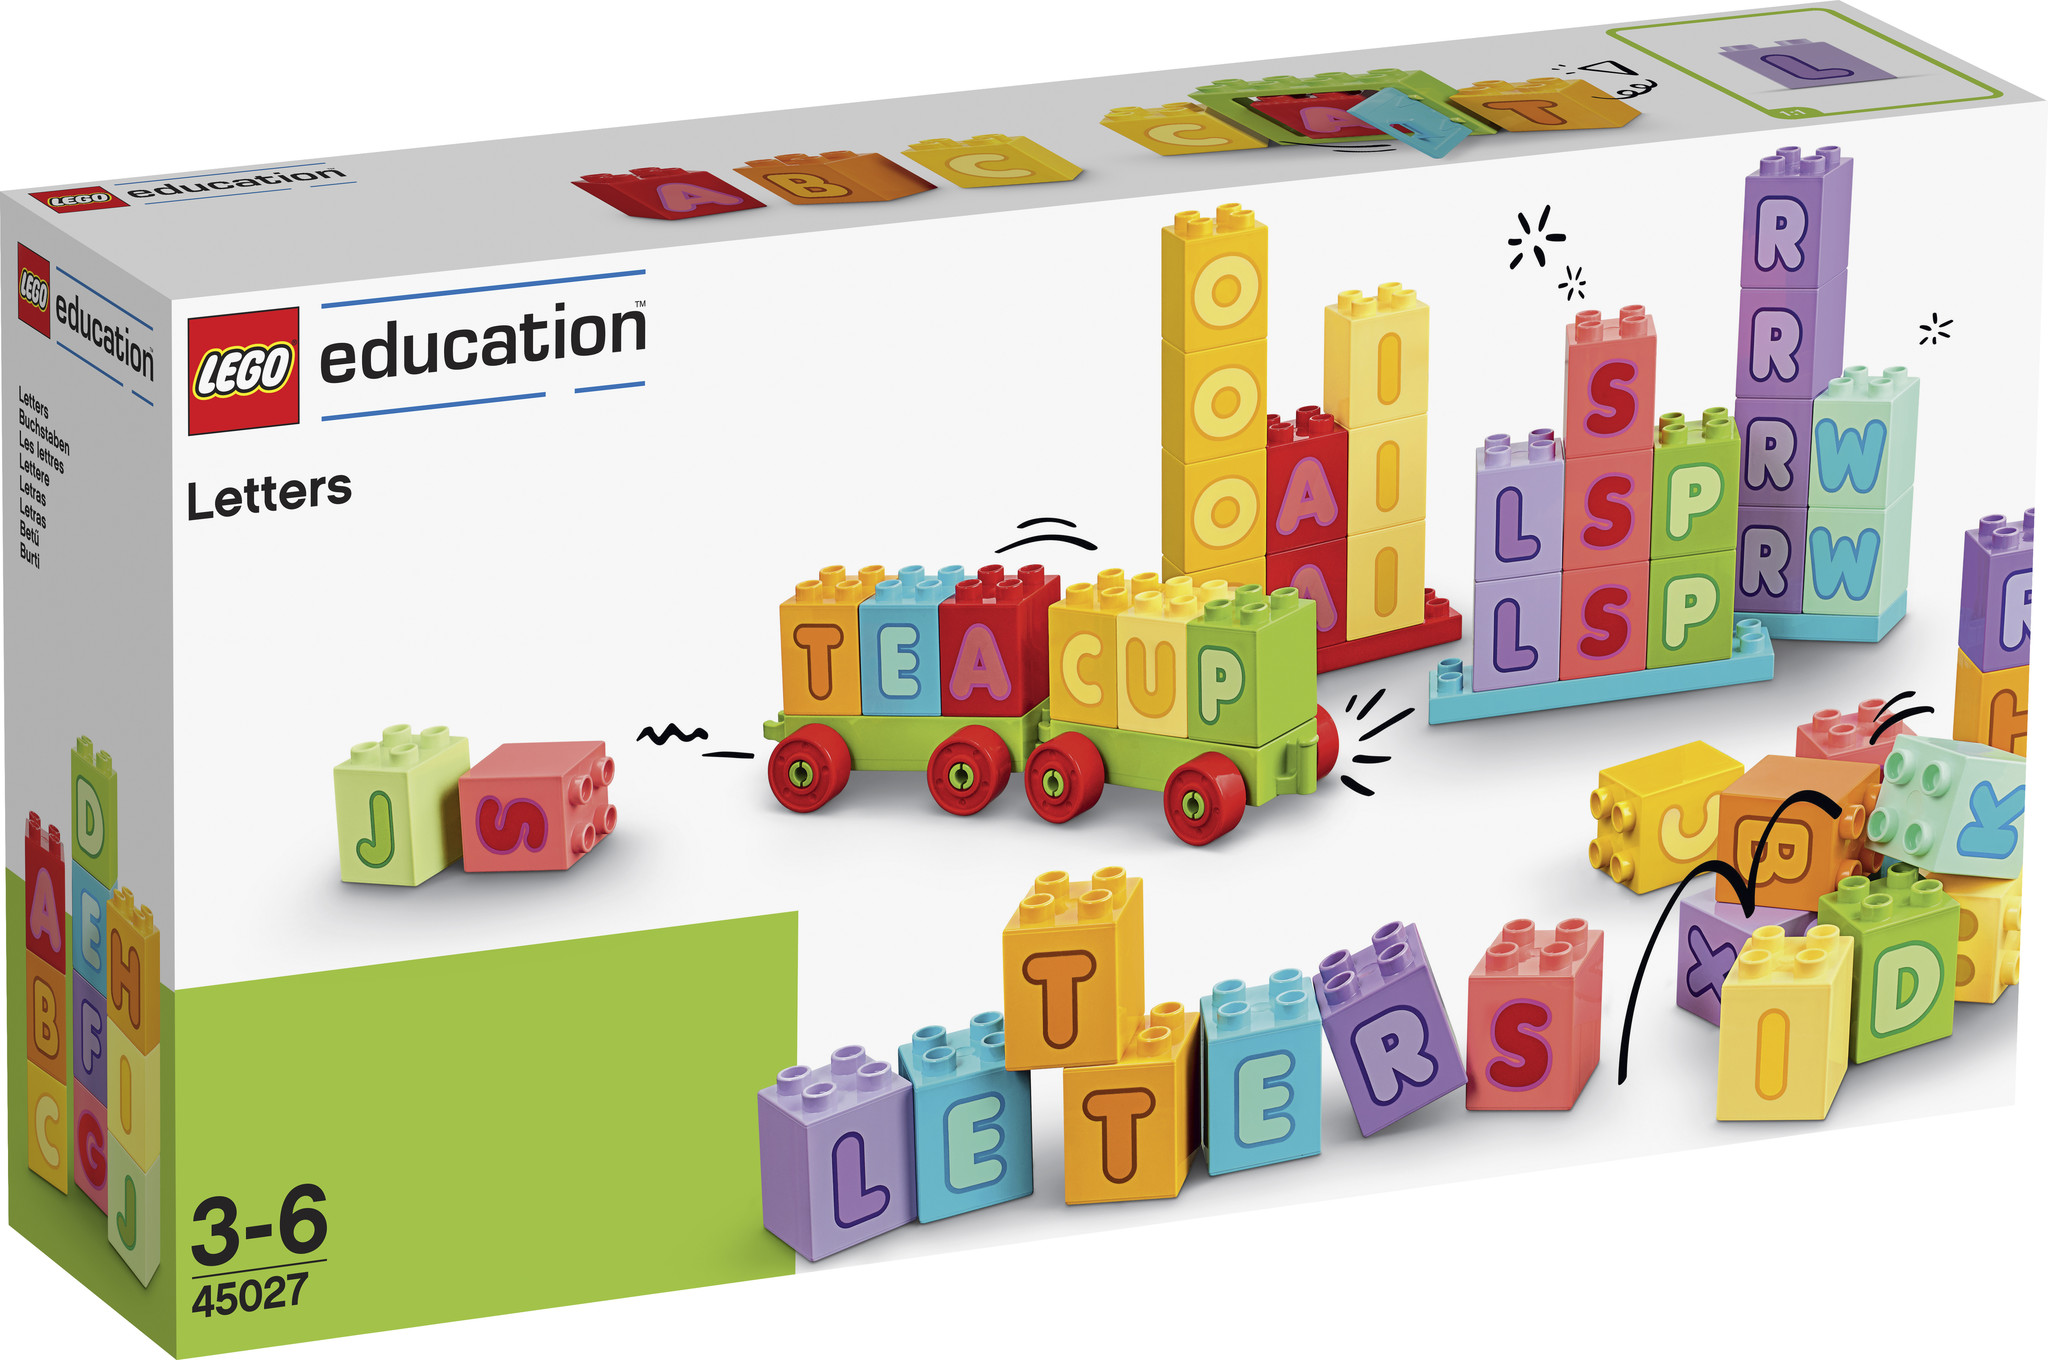 lego education sets